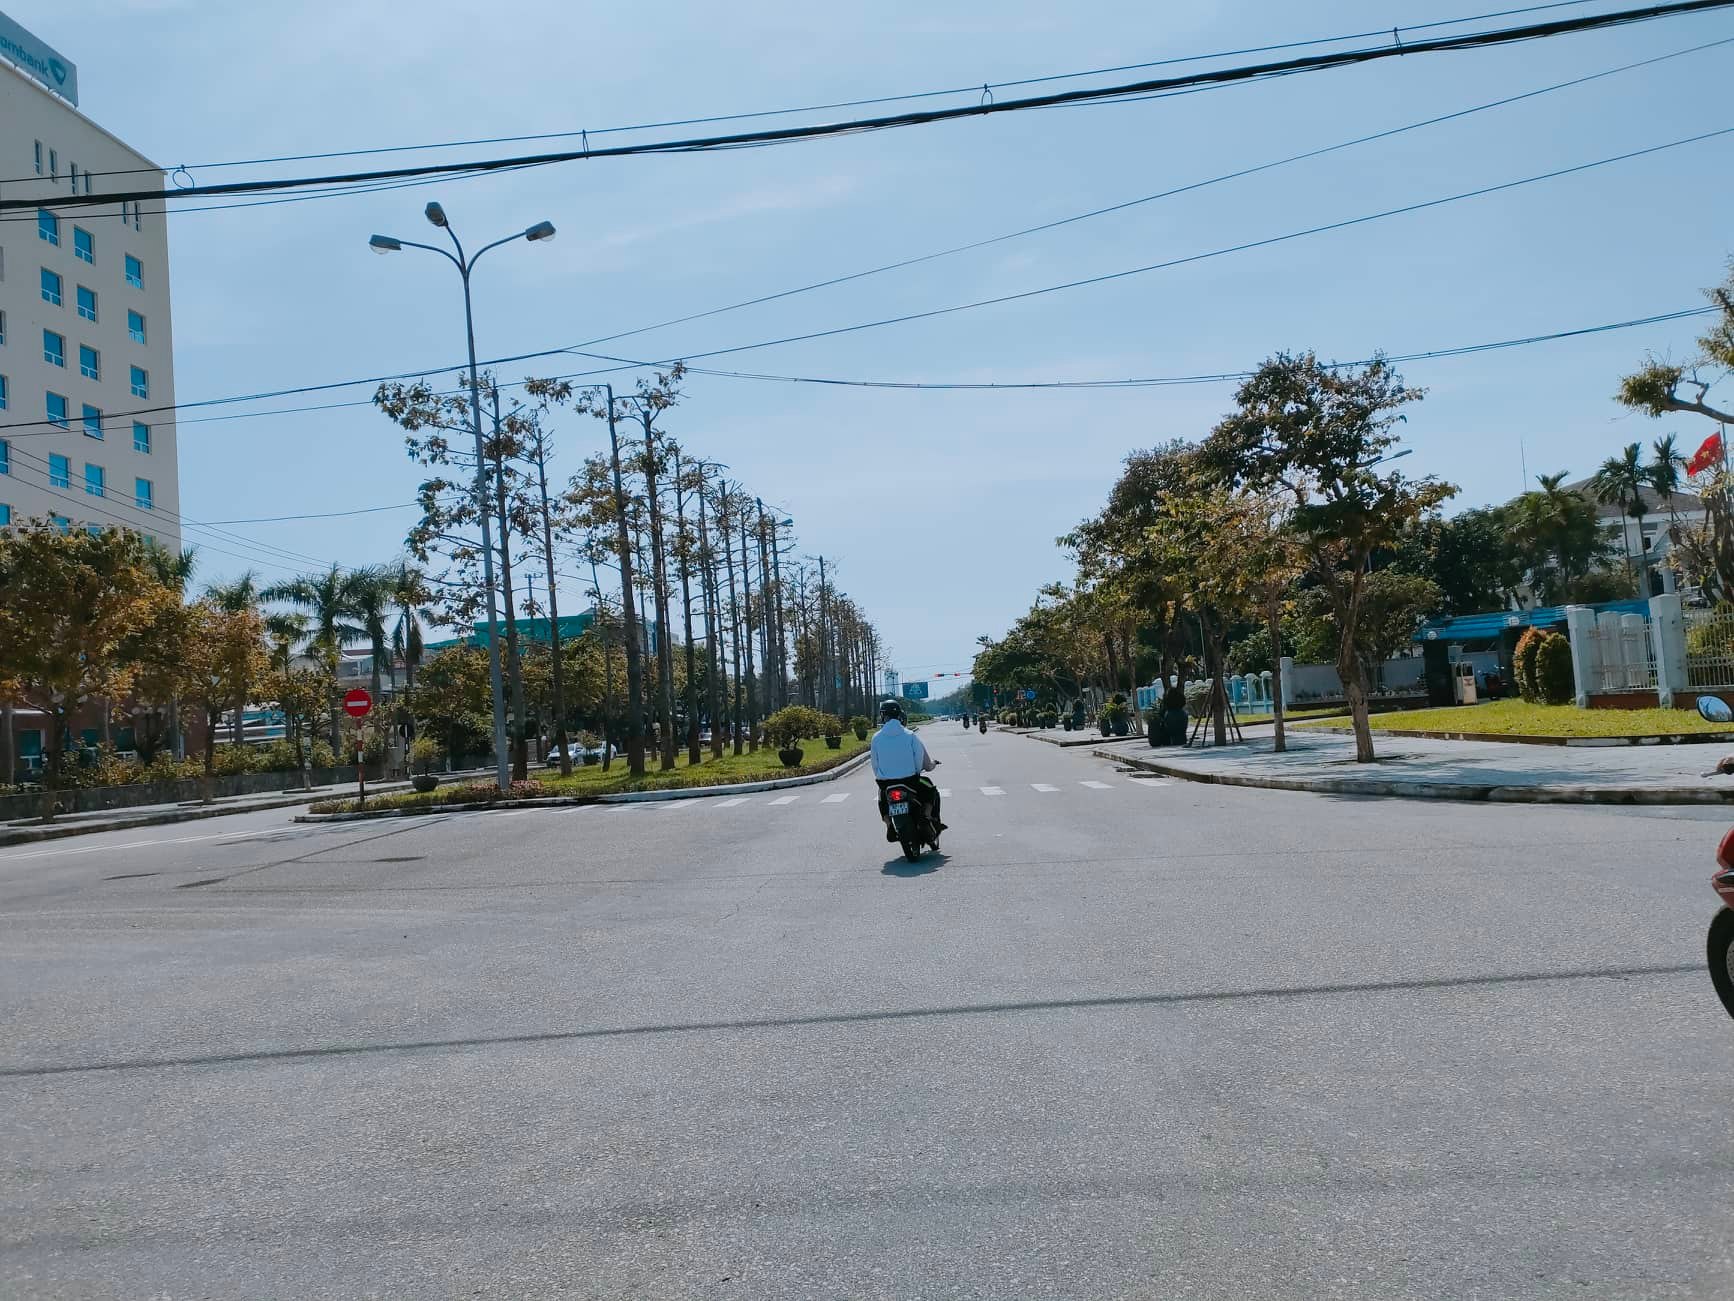 Lãnh đạo Quảng Nam nói về việc làm đường 5,5 km có vốn 450 tỉ đồng - Ảnh 3.